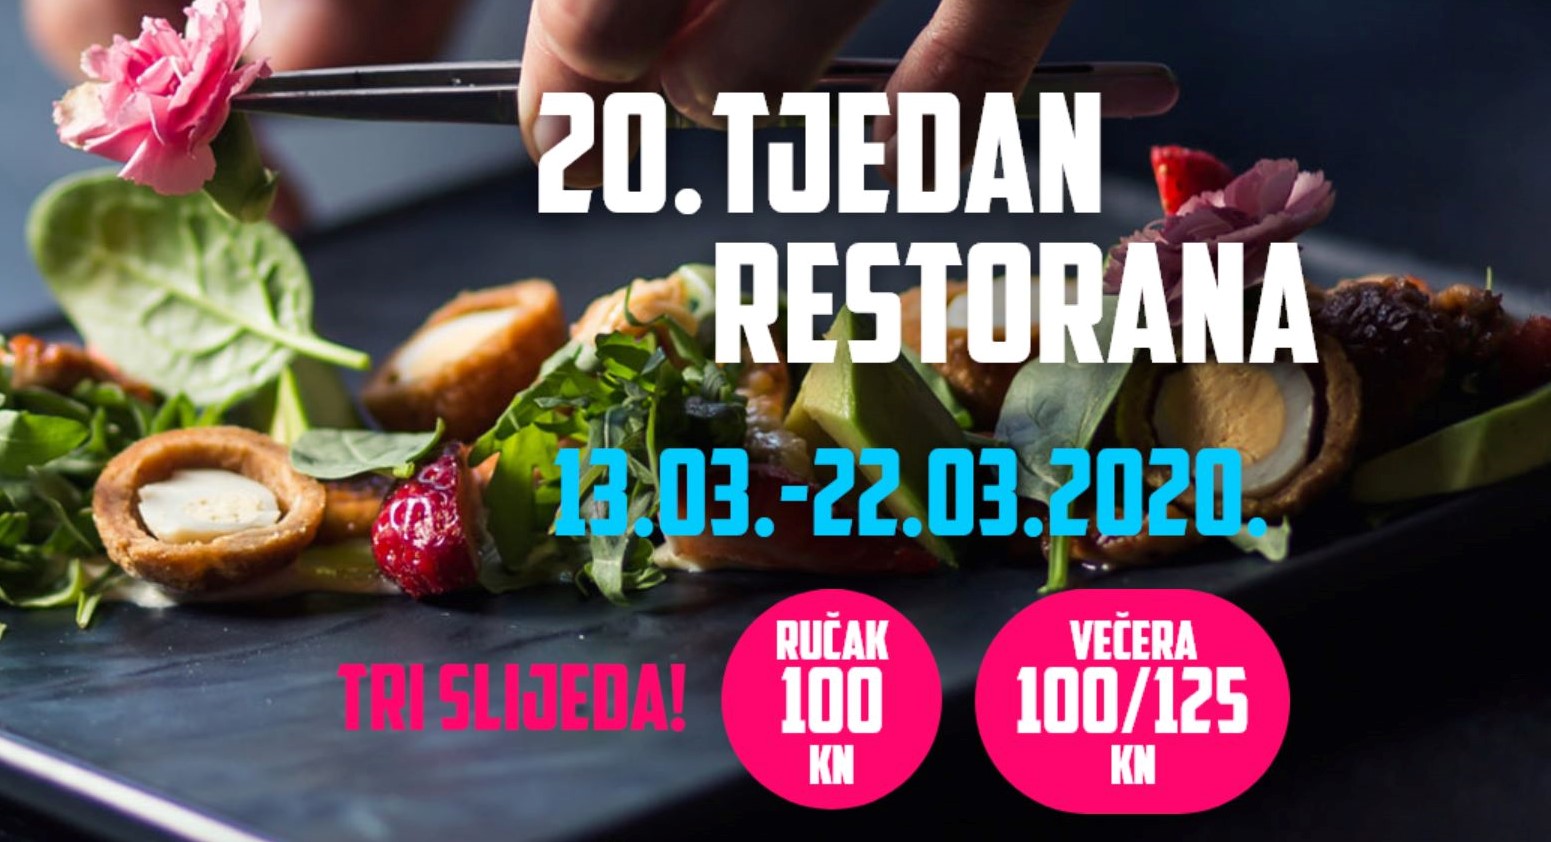 You are currently viewing 20. Tjedan restorana: Započnite gastronomsko istraživanje!